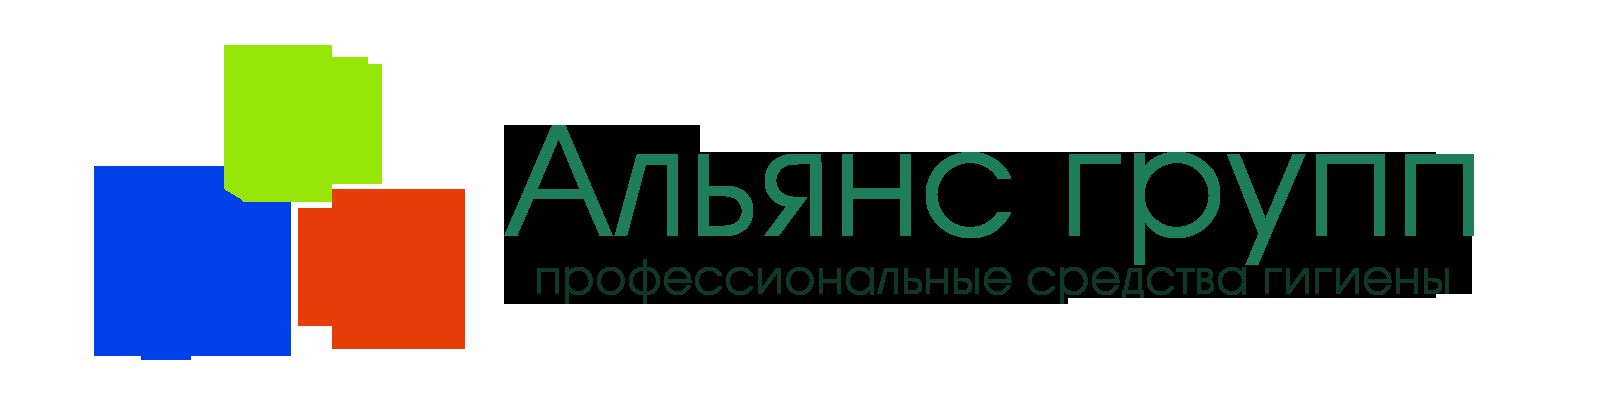 Логотип торгующей организации - дизайнер Swedenski